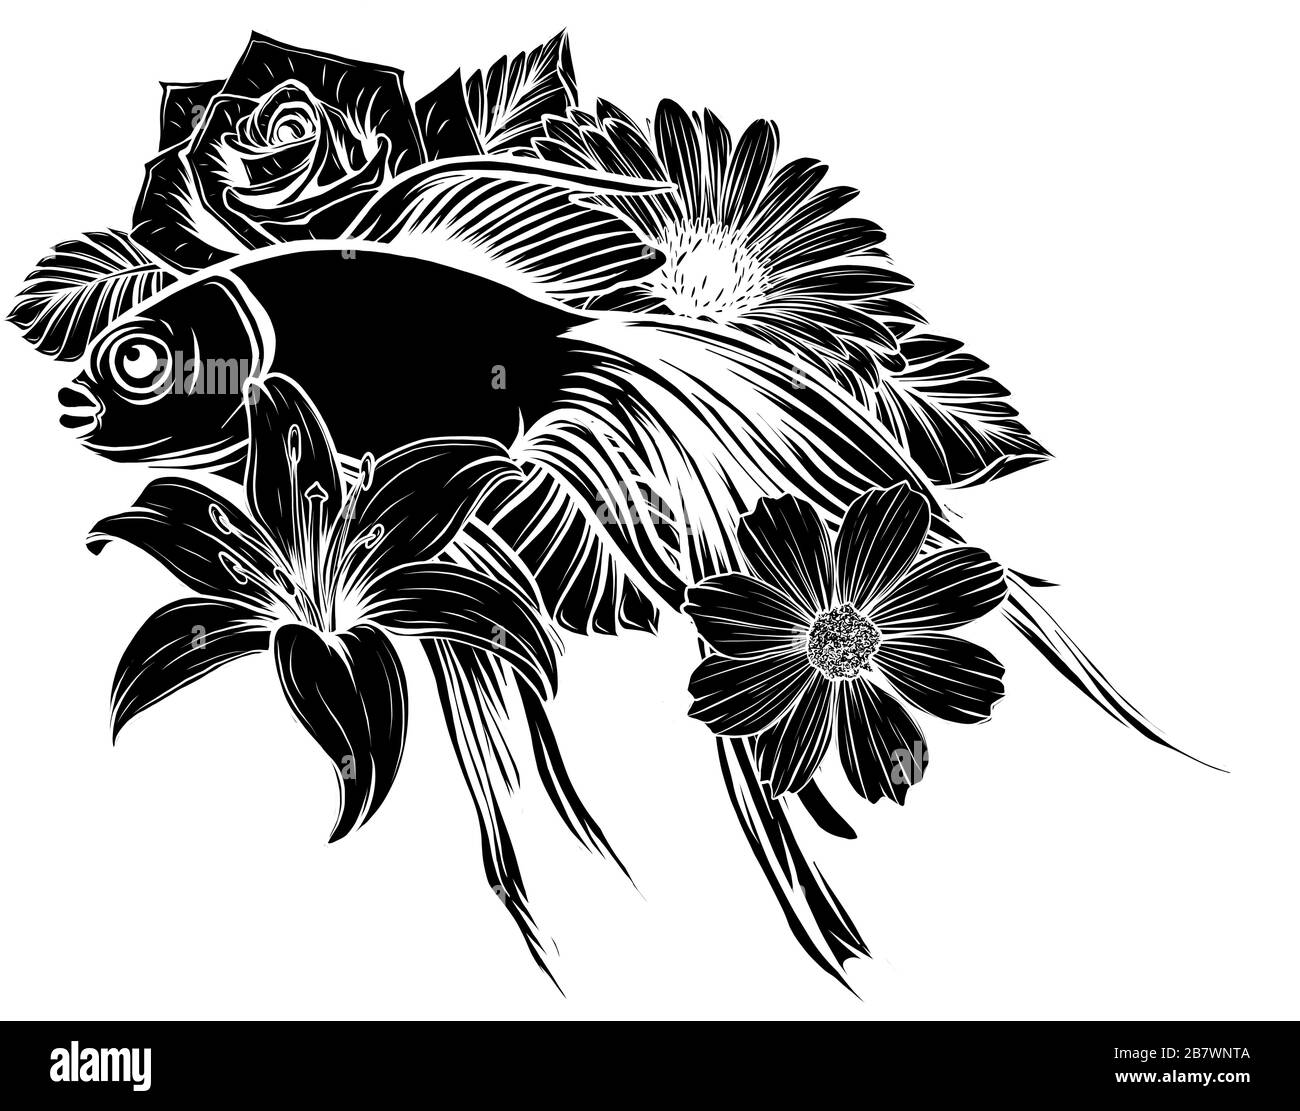 Koi fish tattoo vector illustration. design art Stock Vector